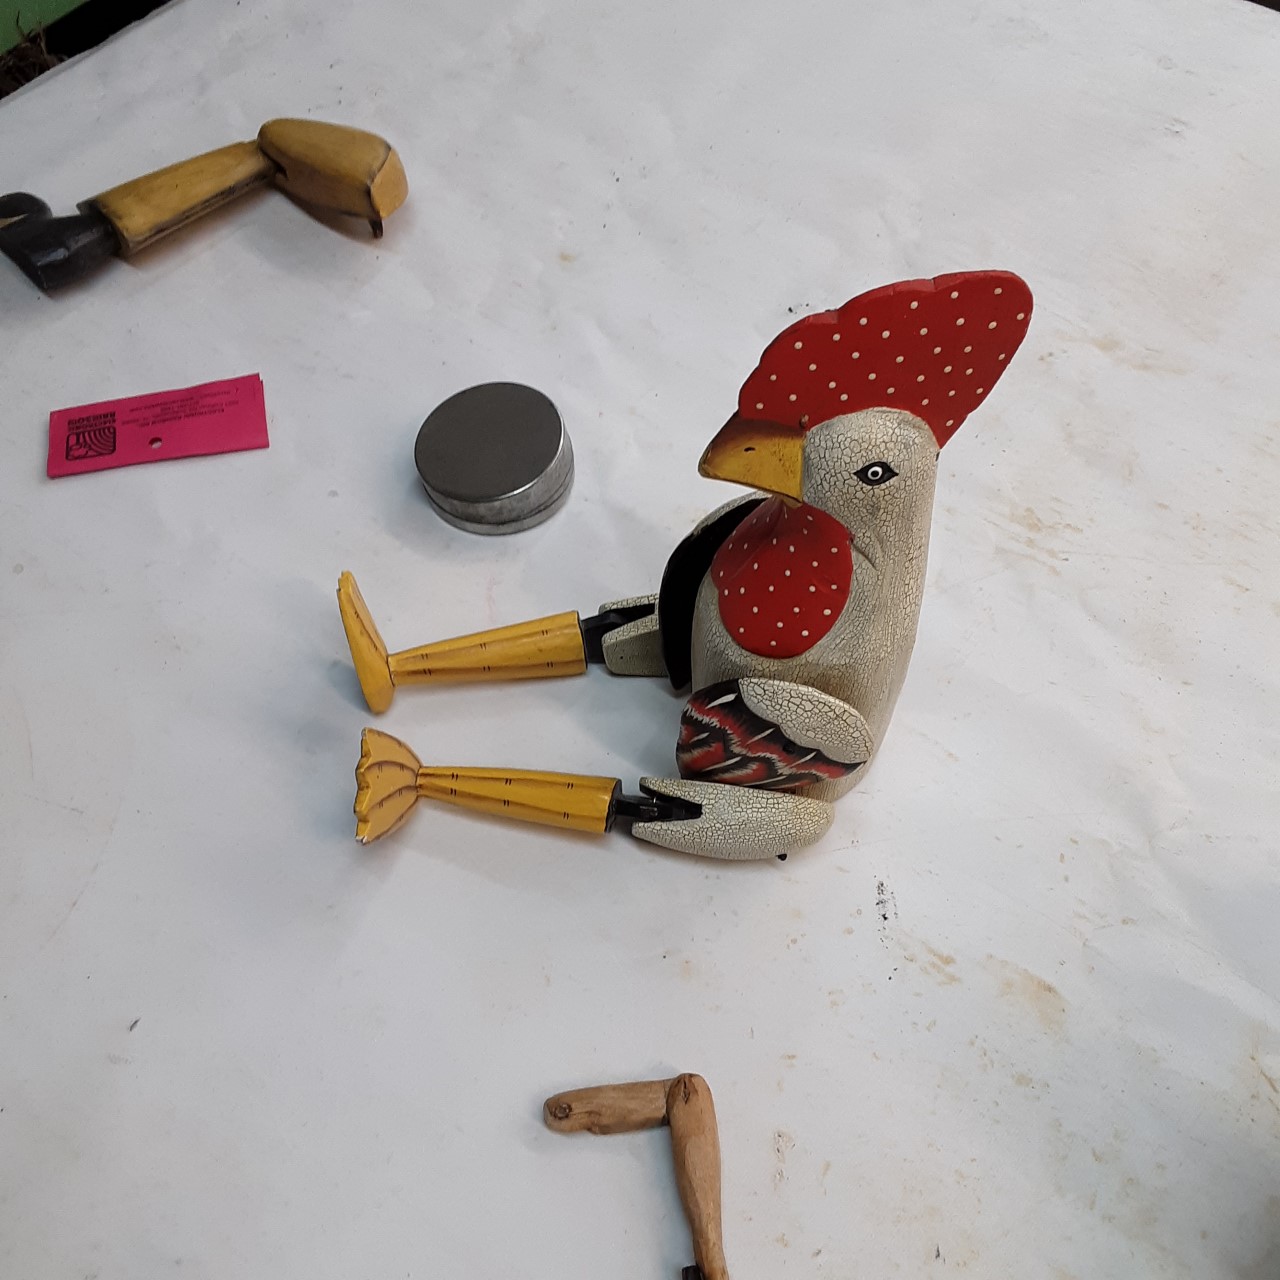 Art Play Day at Murphy Sculpture Studio - chicken- Jan 2020